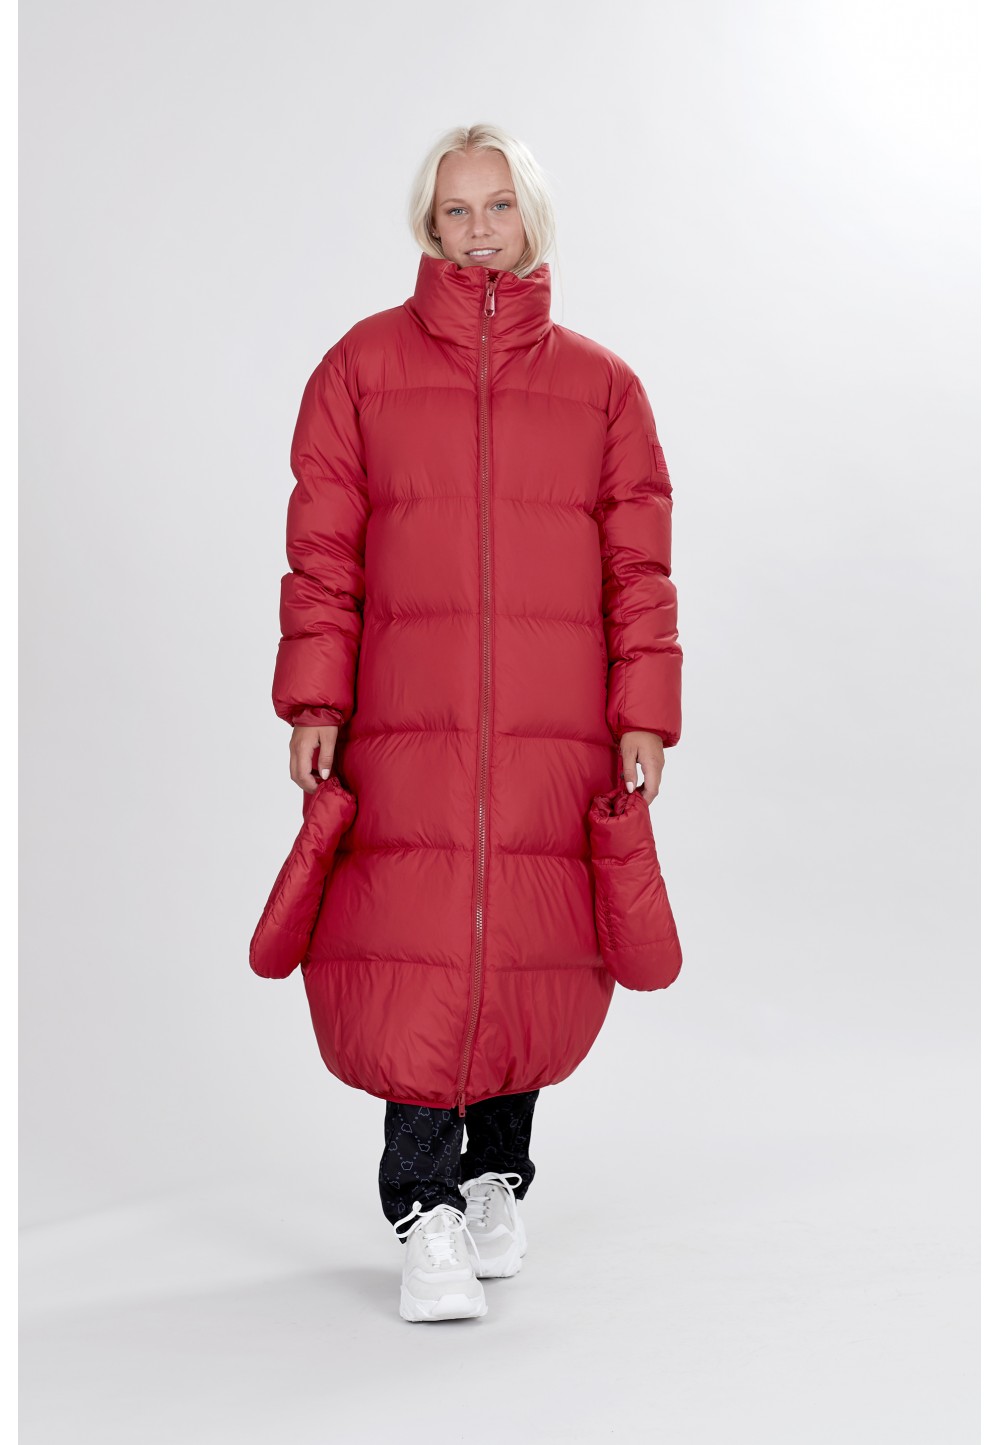 Широкая красная куртка-пальто